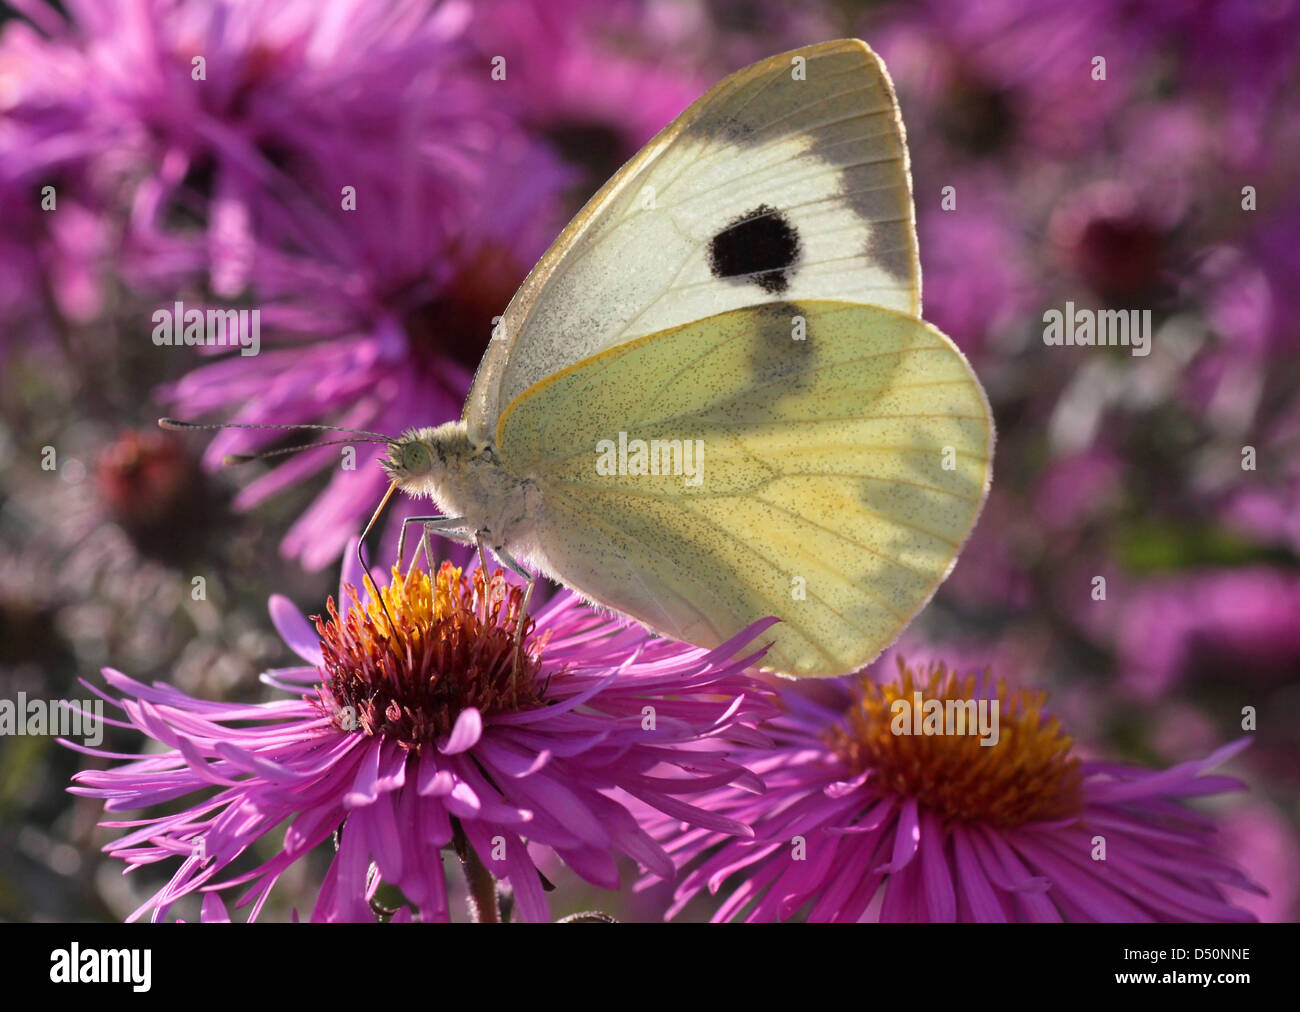 Chou blanc papillon sur la fleur (chrysanthème) Banque D'Images